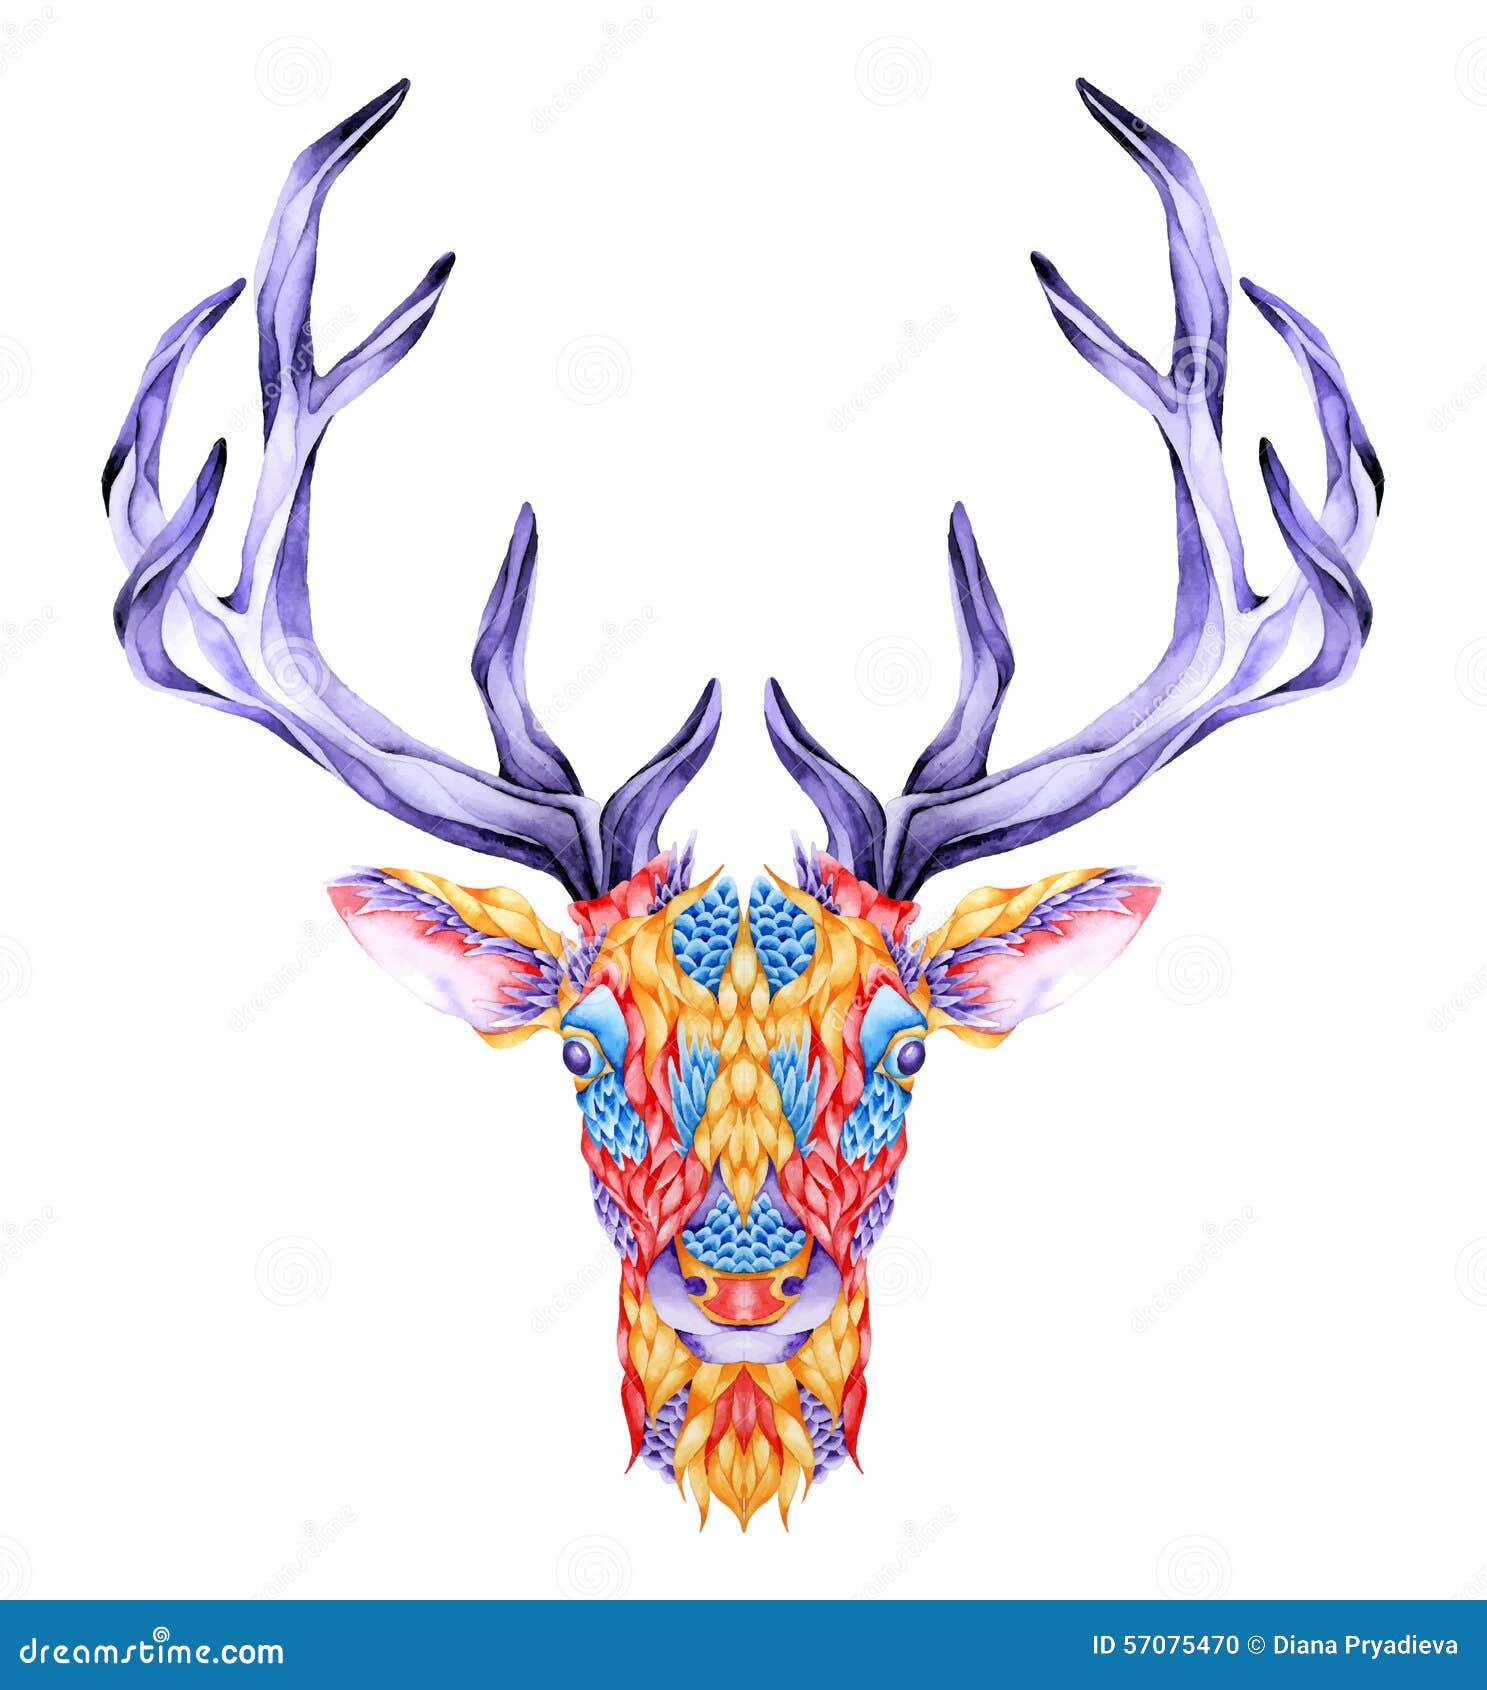 Fairy on Deer Skull Tattoo Design by sharshar27 on DeviantArt